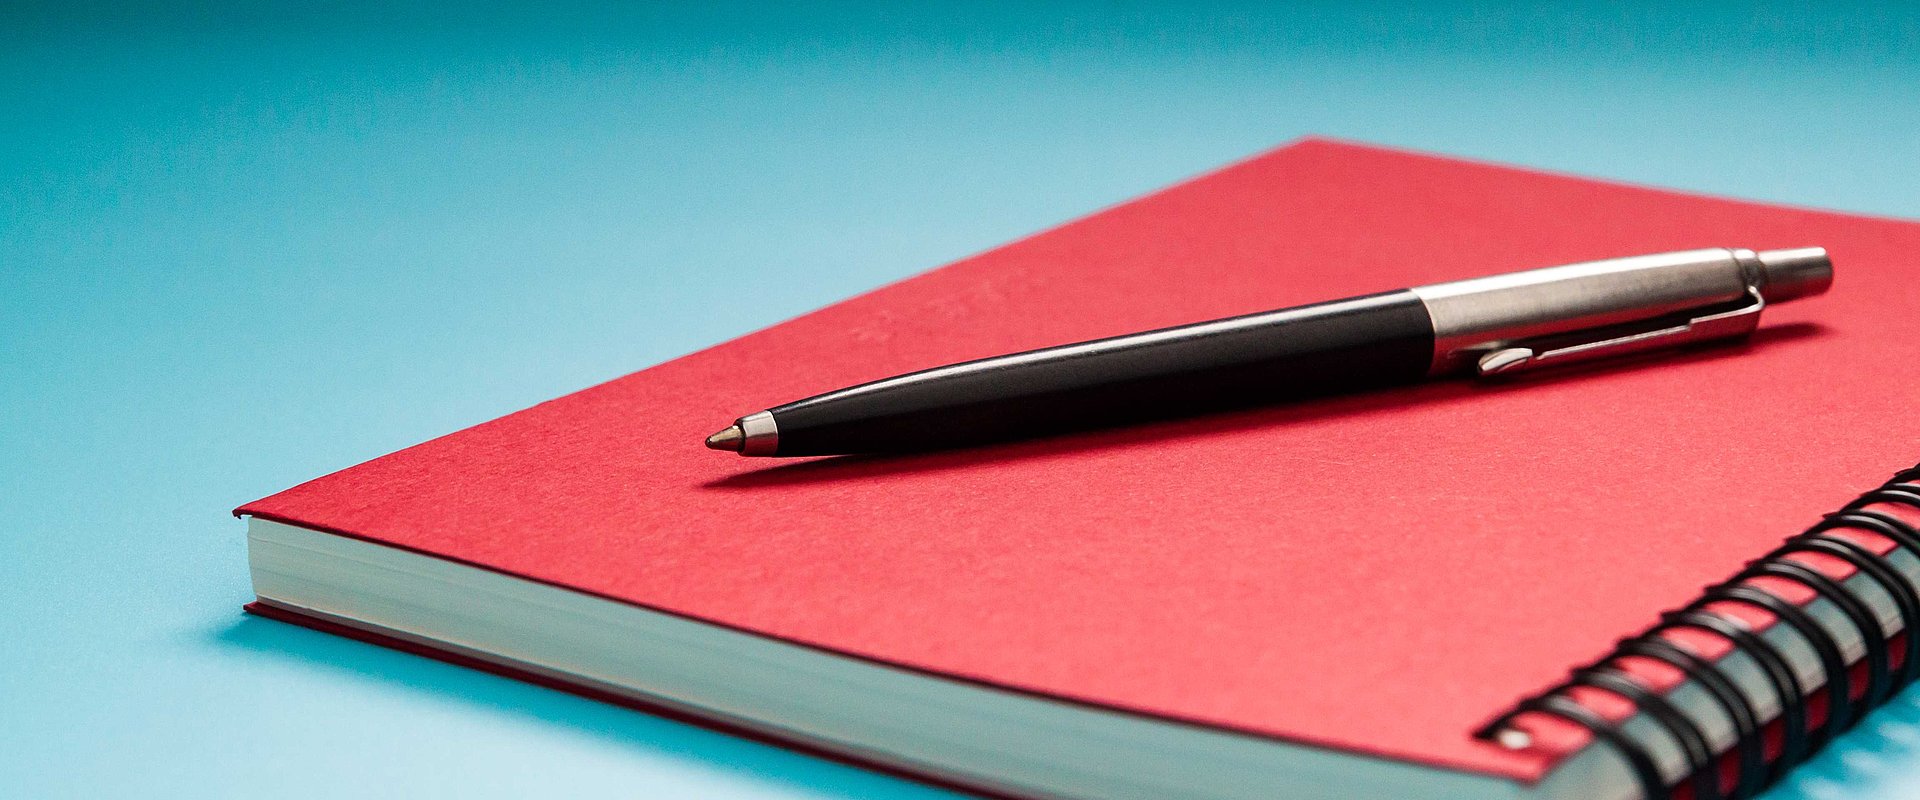 Stift auf rotem Notizbuch